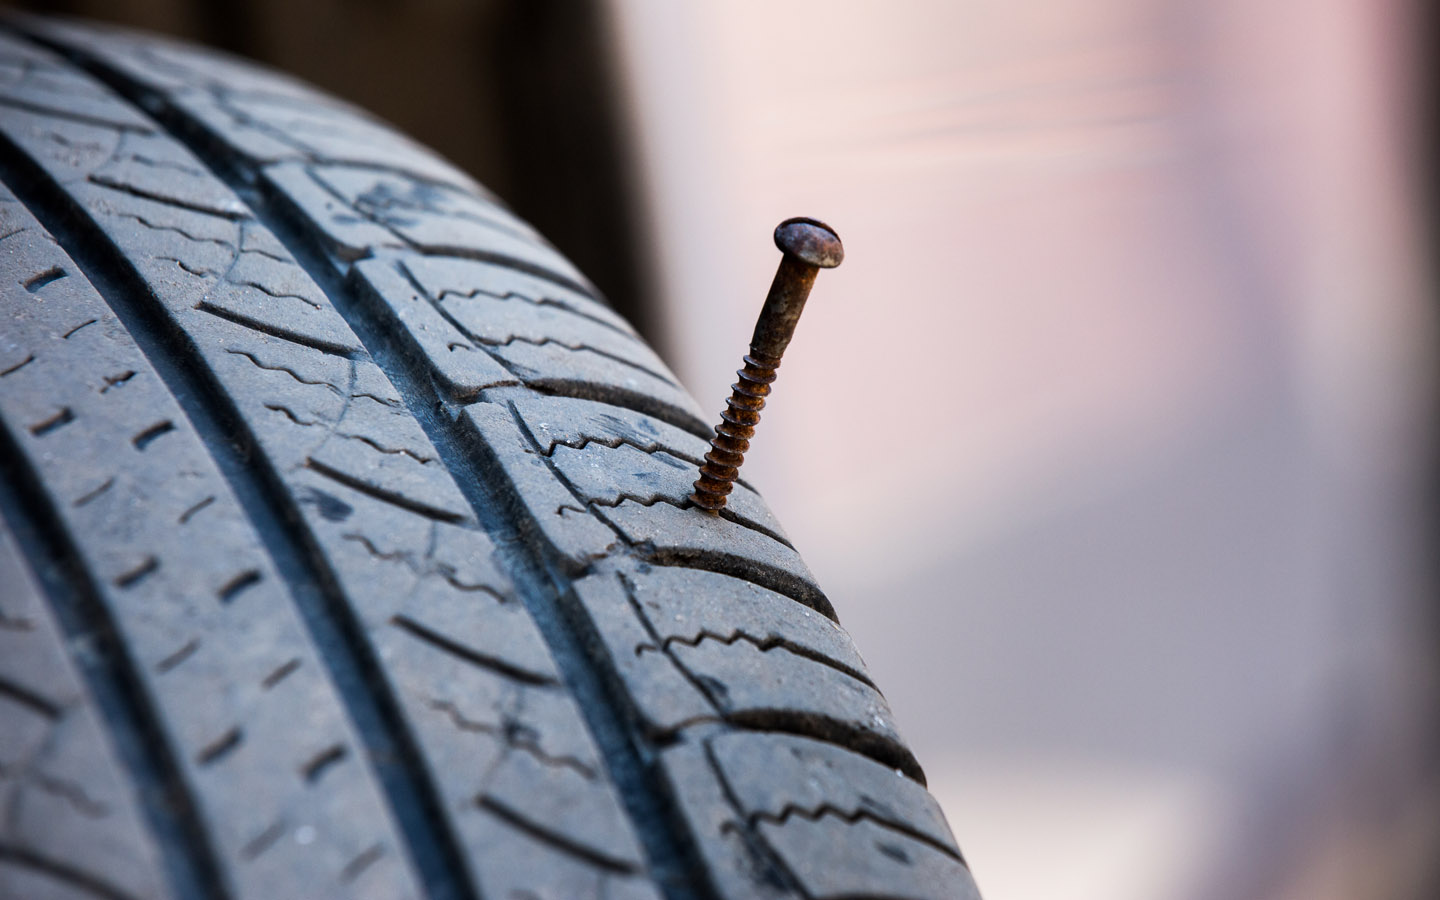 гвоздь, застрявший в автомобильных шинах, является распространенной причиной спущенных шин